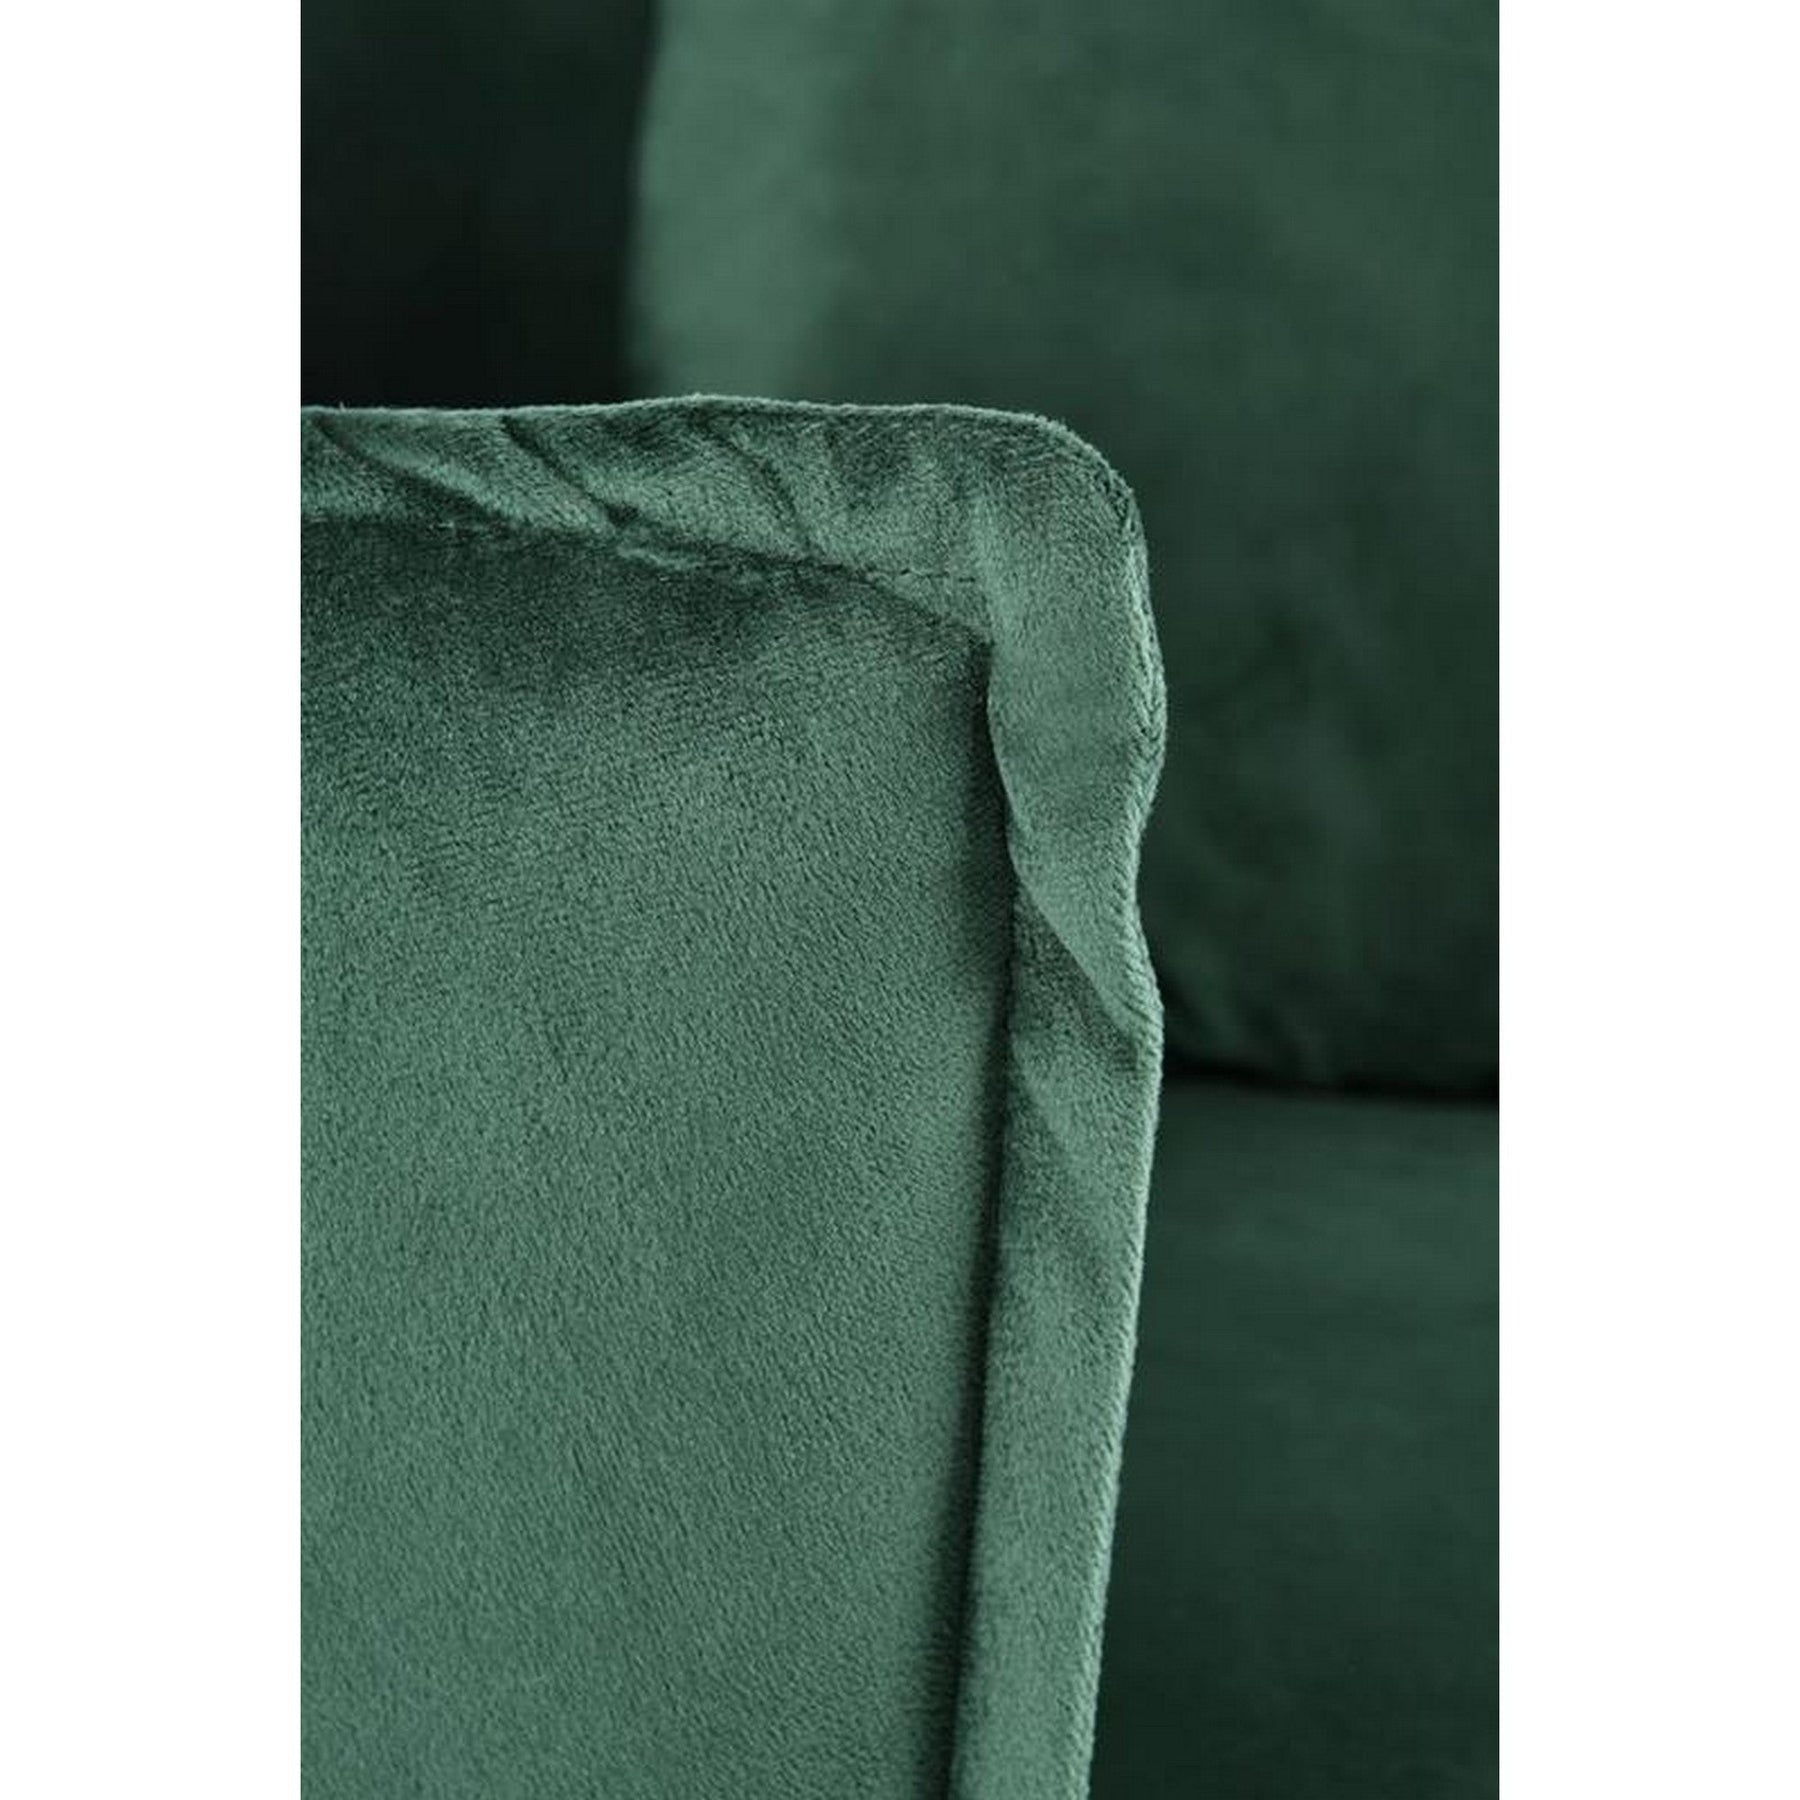 Fotoliu modern Almond, verde inchis/auriu, 90x90x87 cm